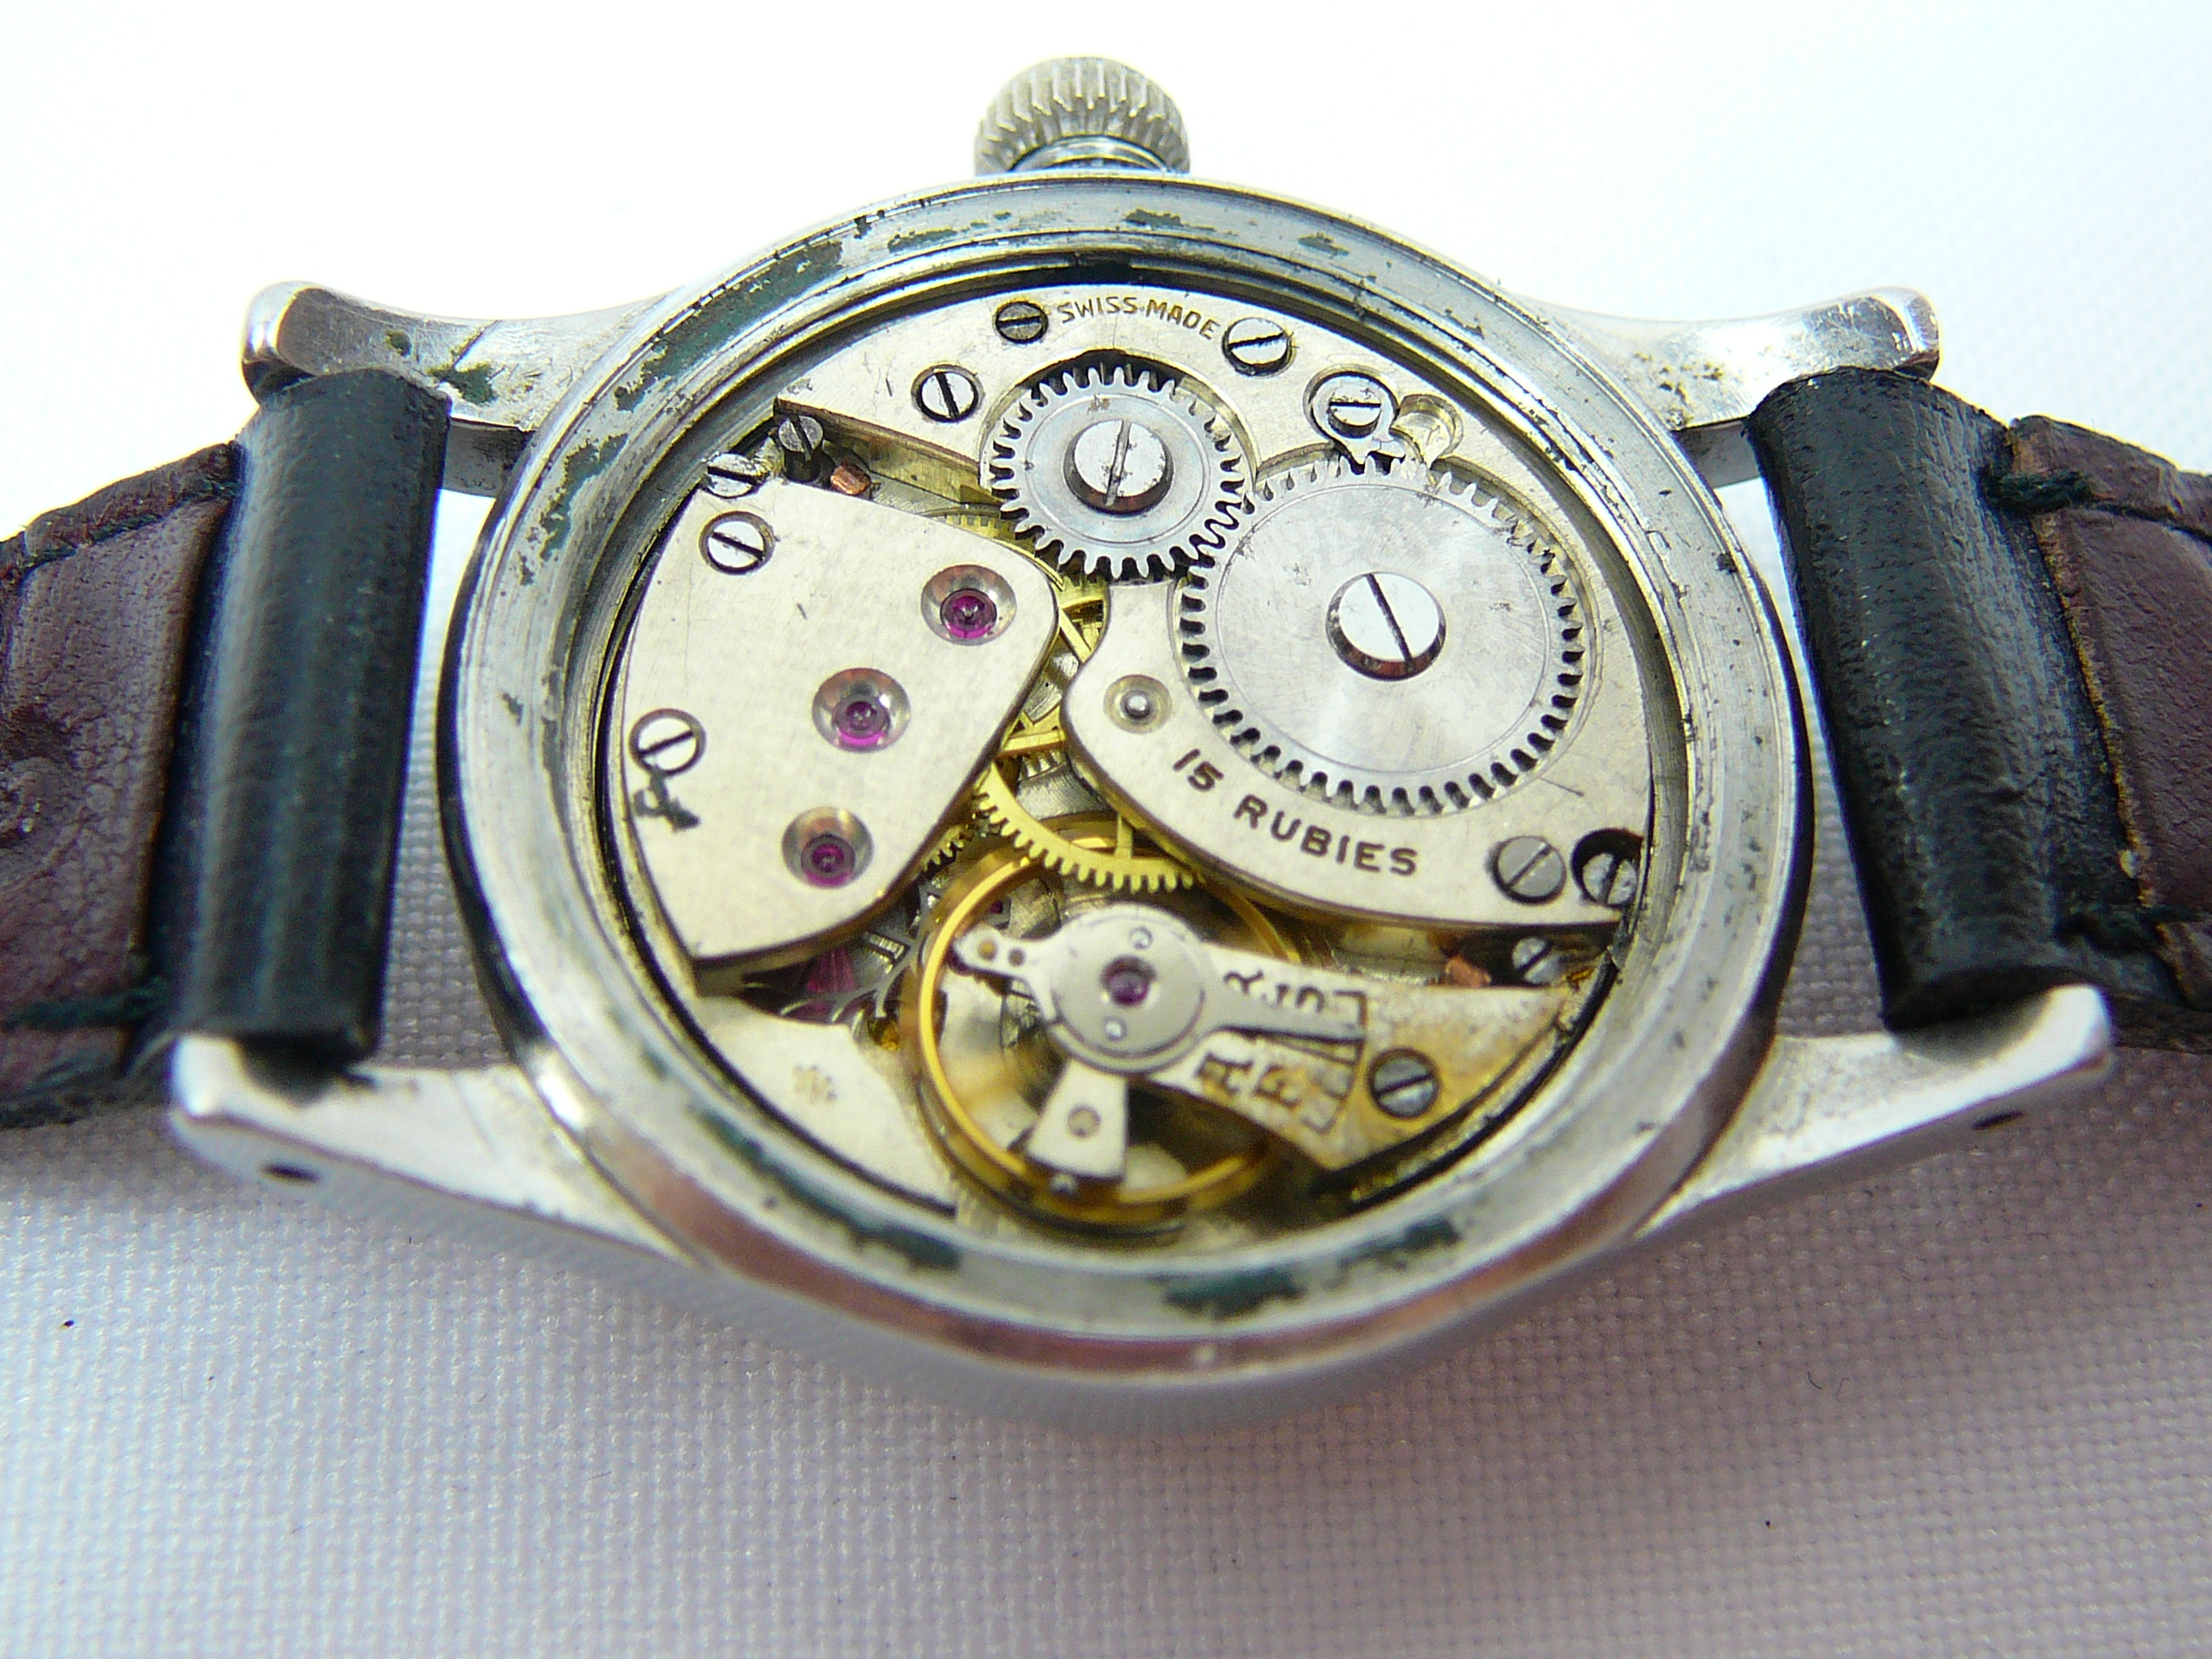 Gents Vintage Rolex Wrist Watch - Image 5 of 7